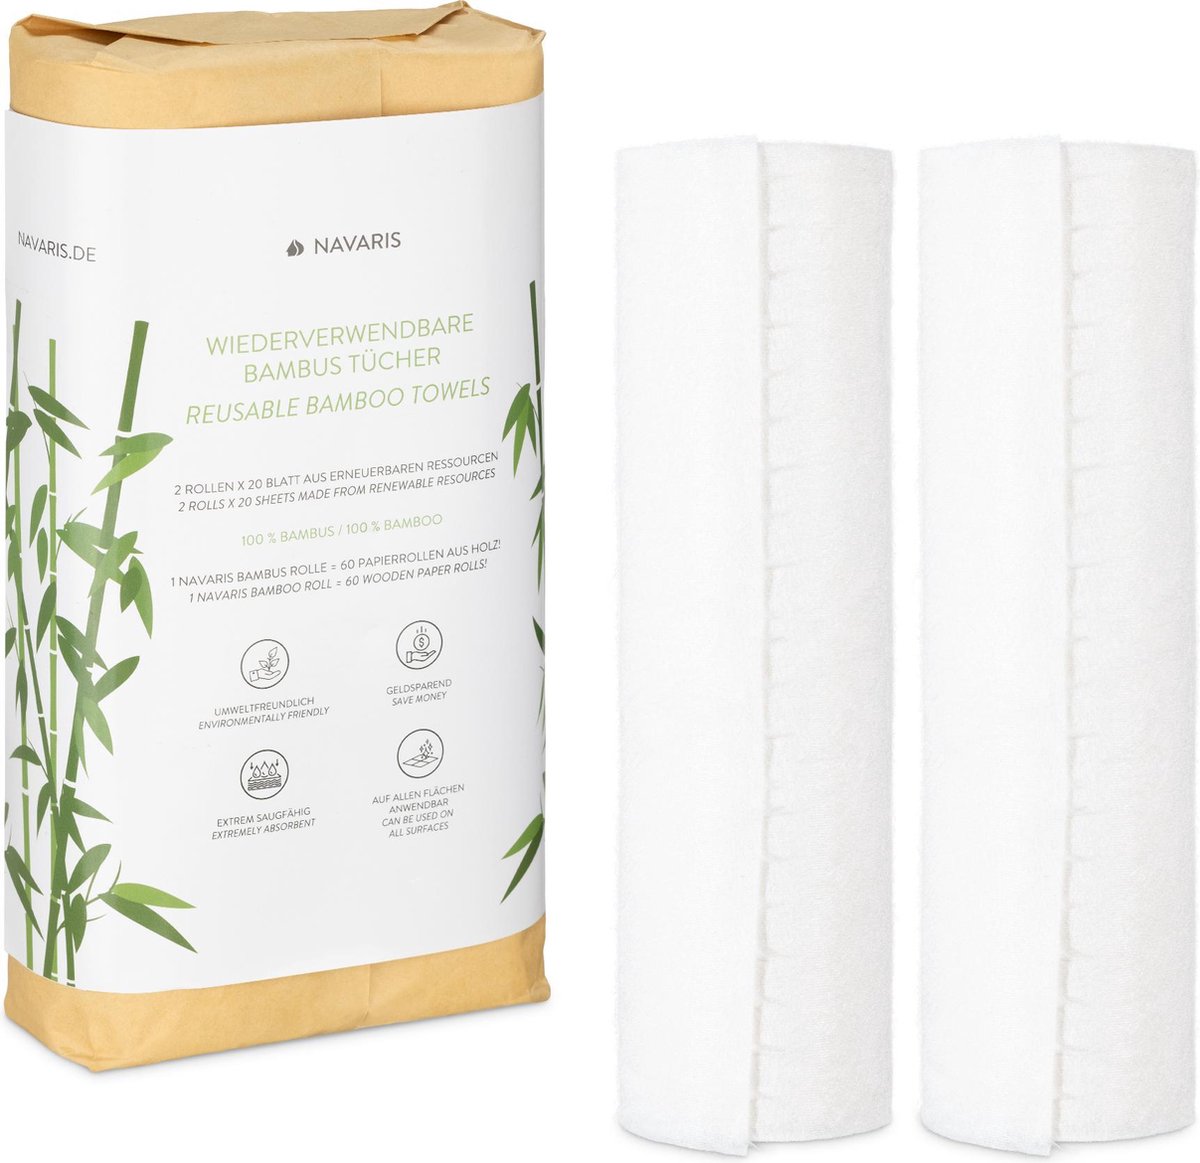 Essuie-tout lavable, Papier Absorbant réutilisable en bambou, Multi-usage, Antibactérien, Résistant, épais et absorbant, 20 feuilles réutilisables